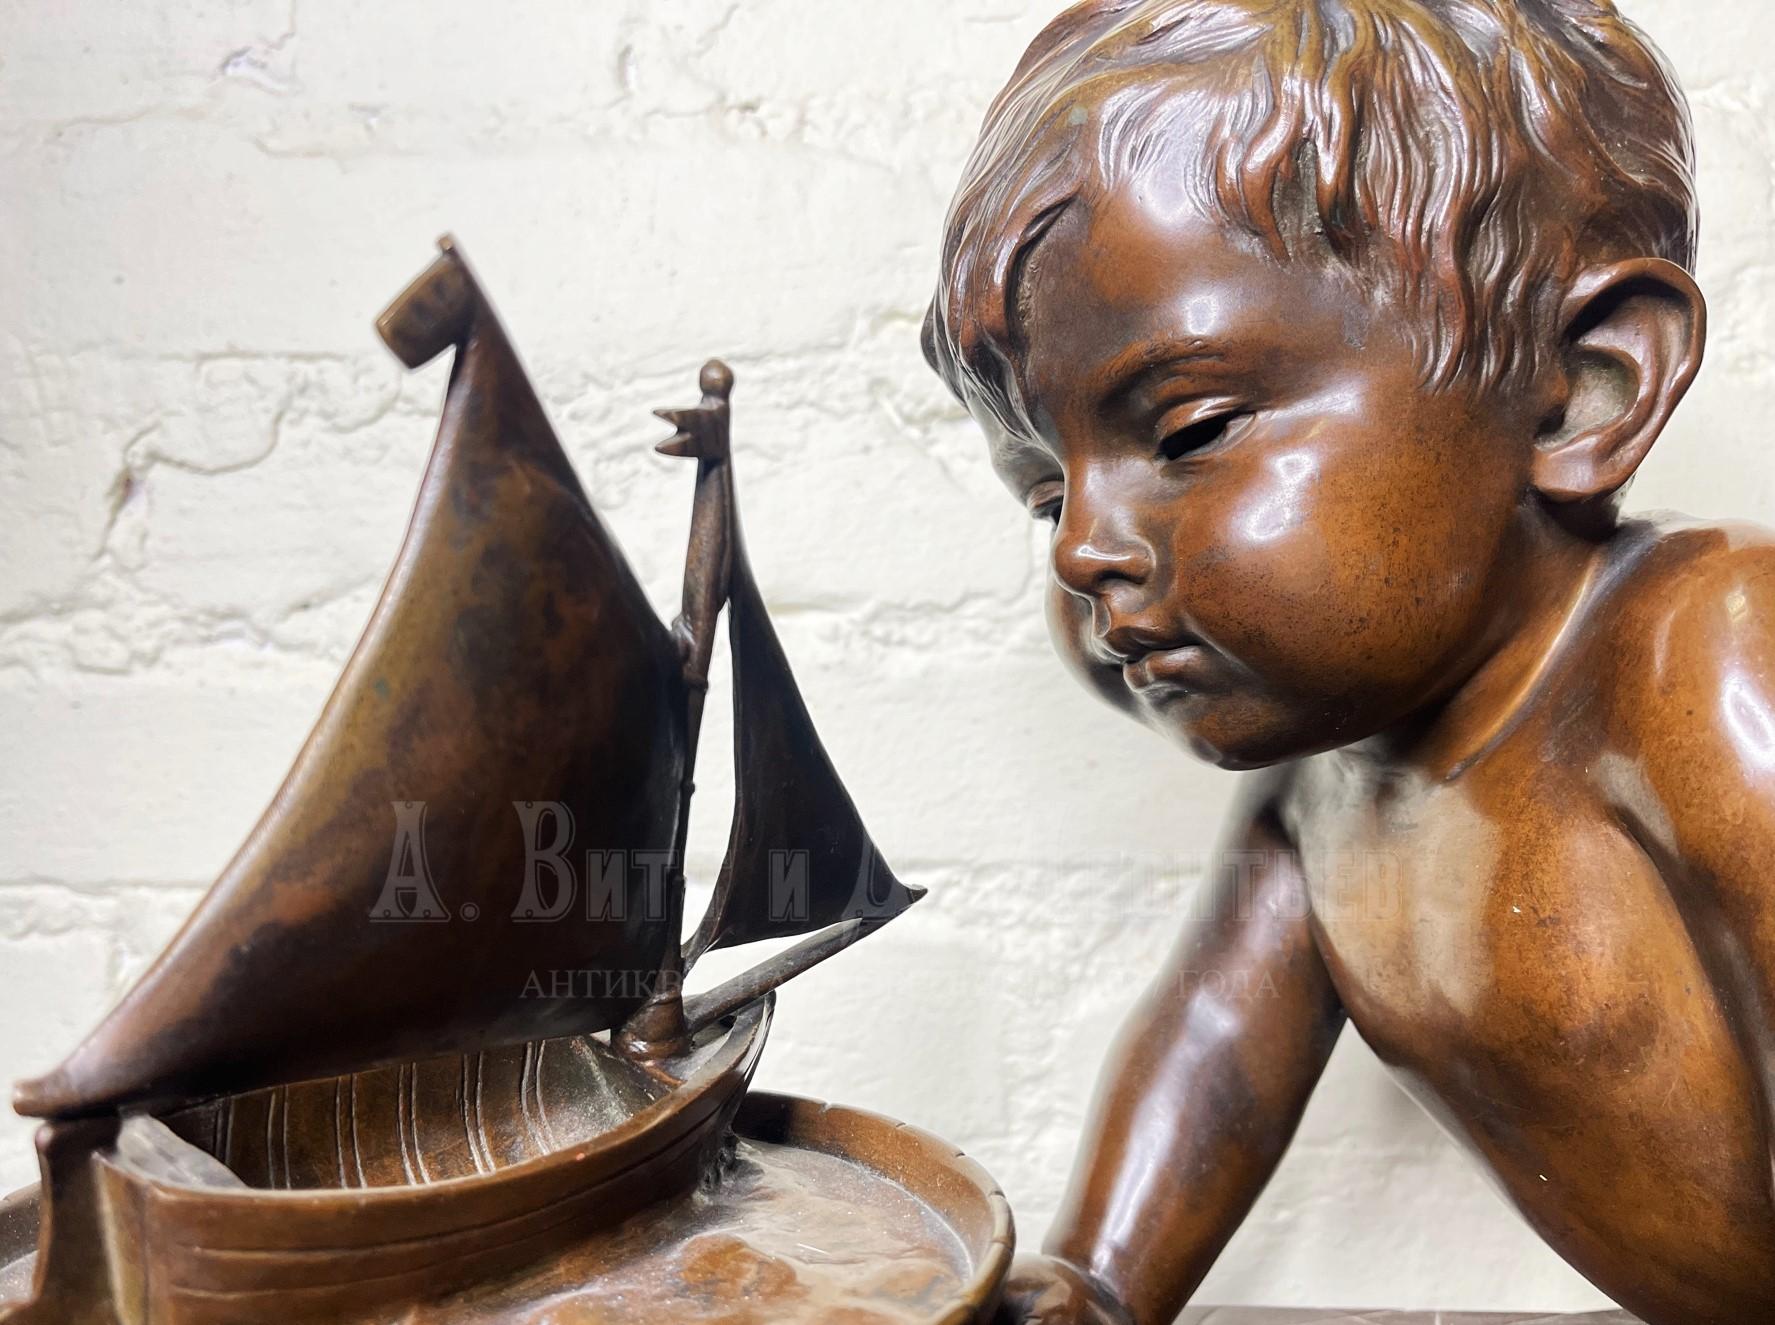 Ребенок с лодкой бронзовая скульптура Villanis